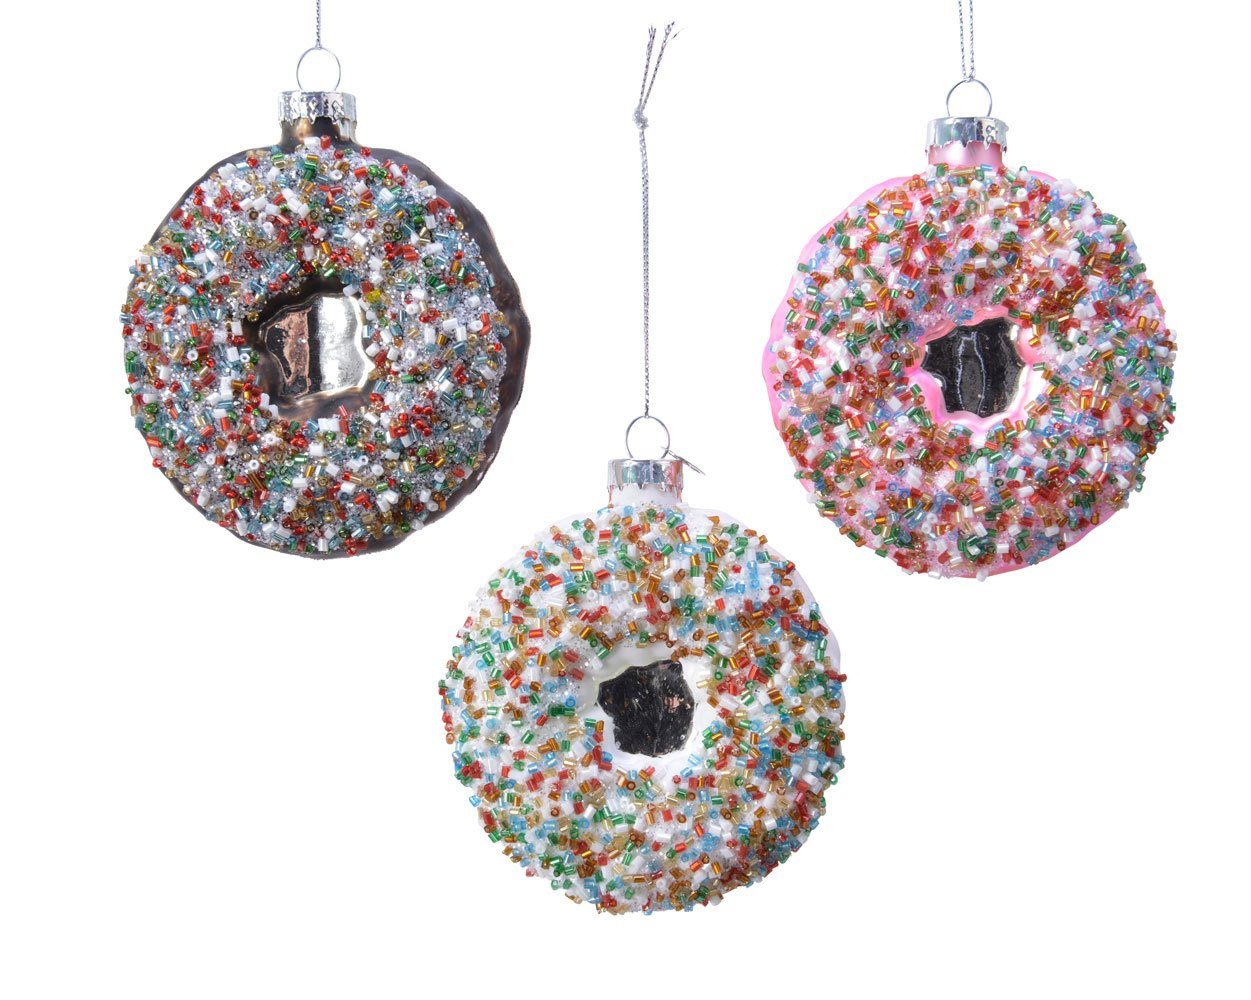 Stück 1 Decoris Christbaumschmuck, 9cm, sortiert Christbaumschmuck Donut decorations Glas season